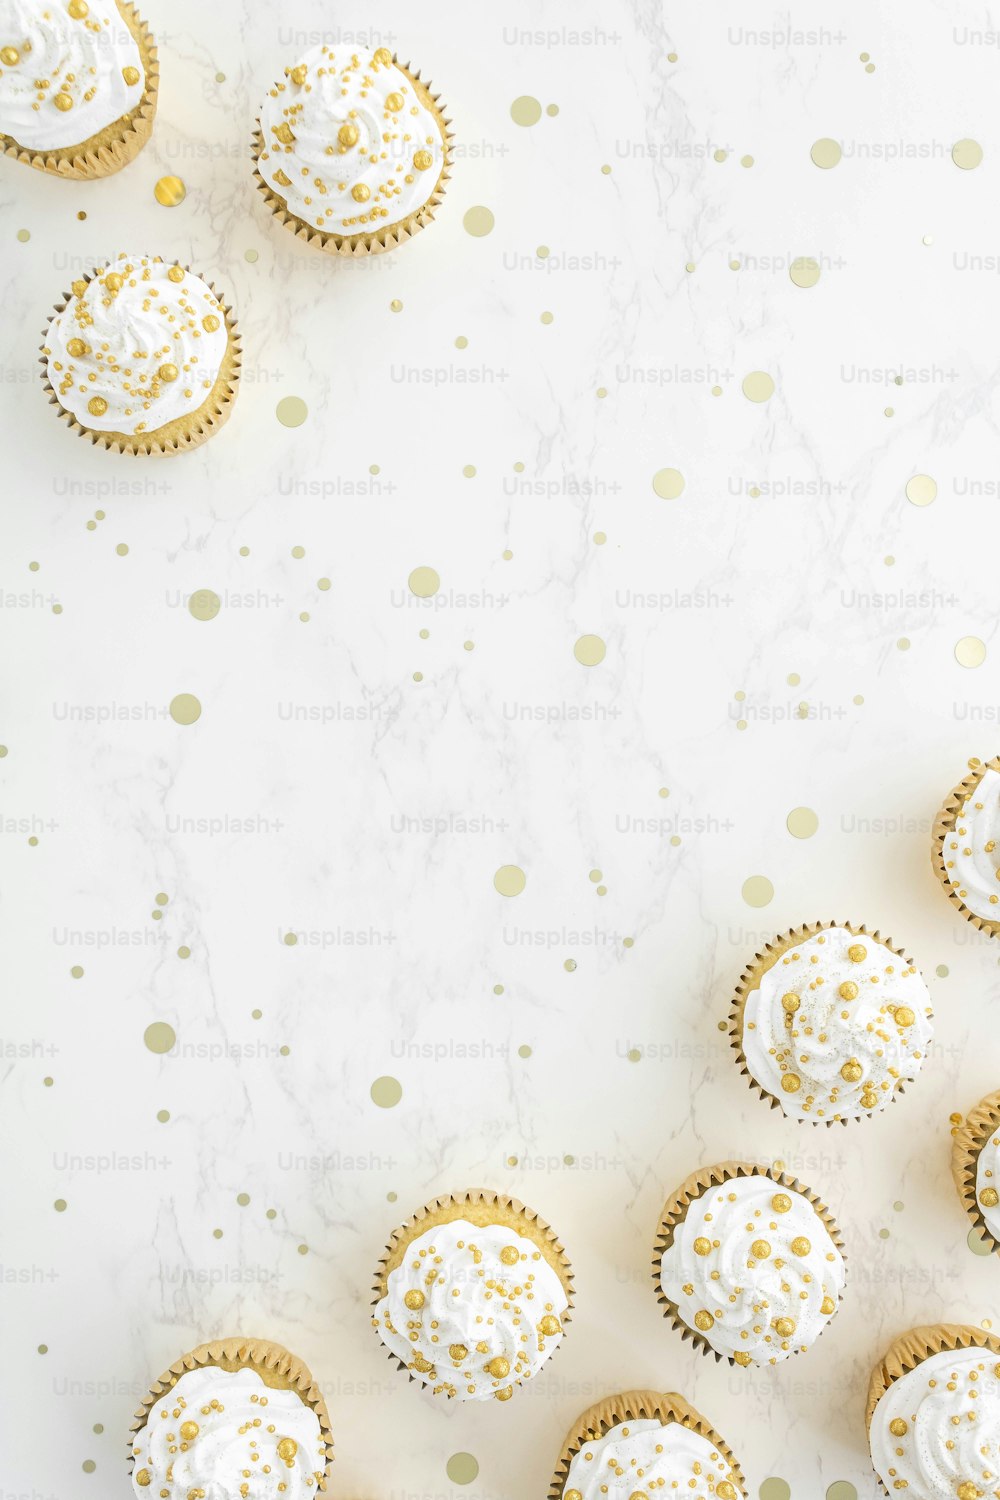 cupcakes con glassa bianca e codette d'oro su un bianco